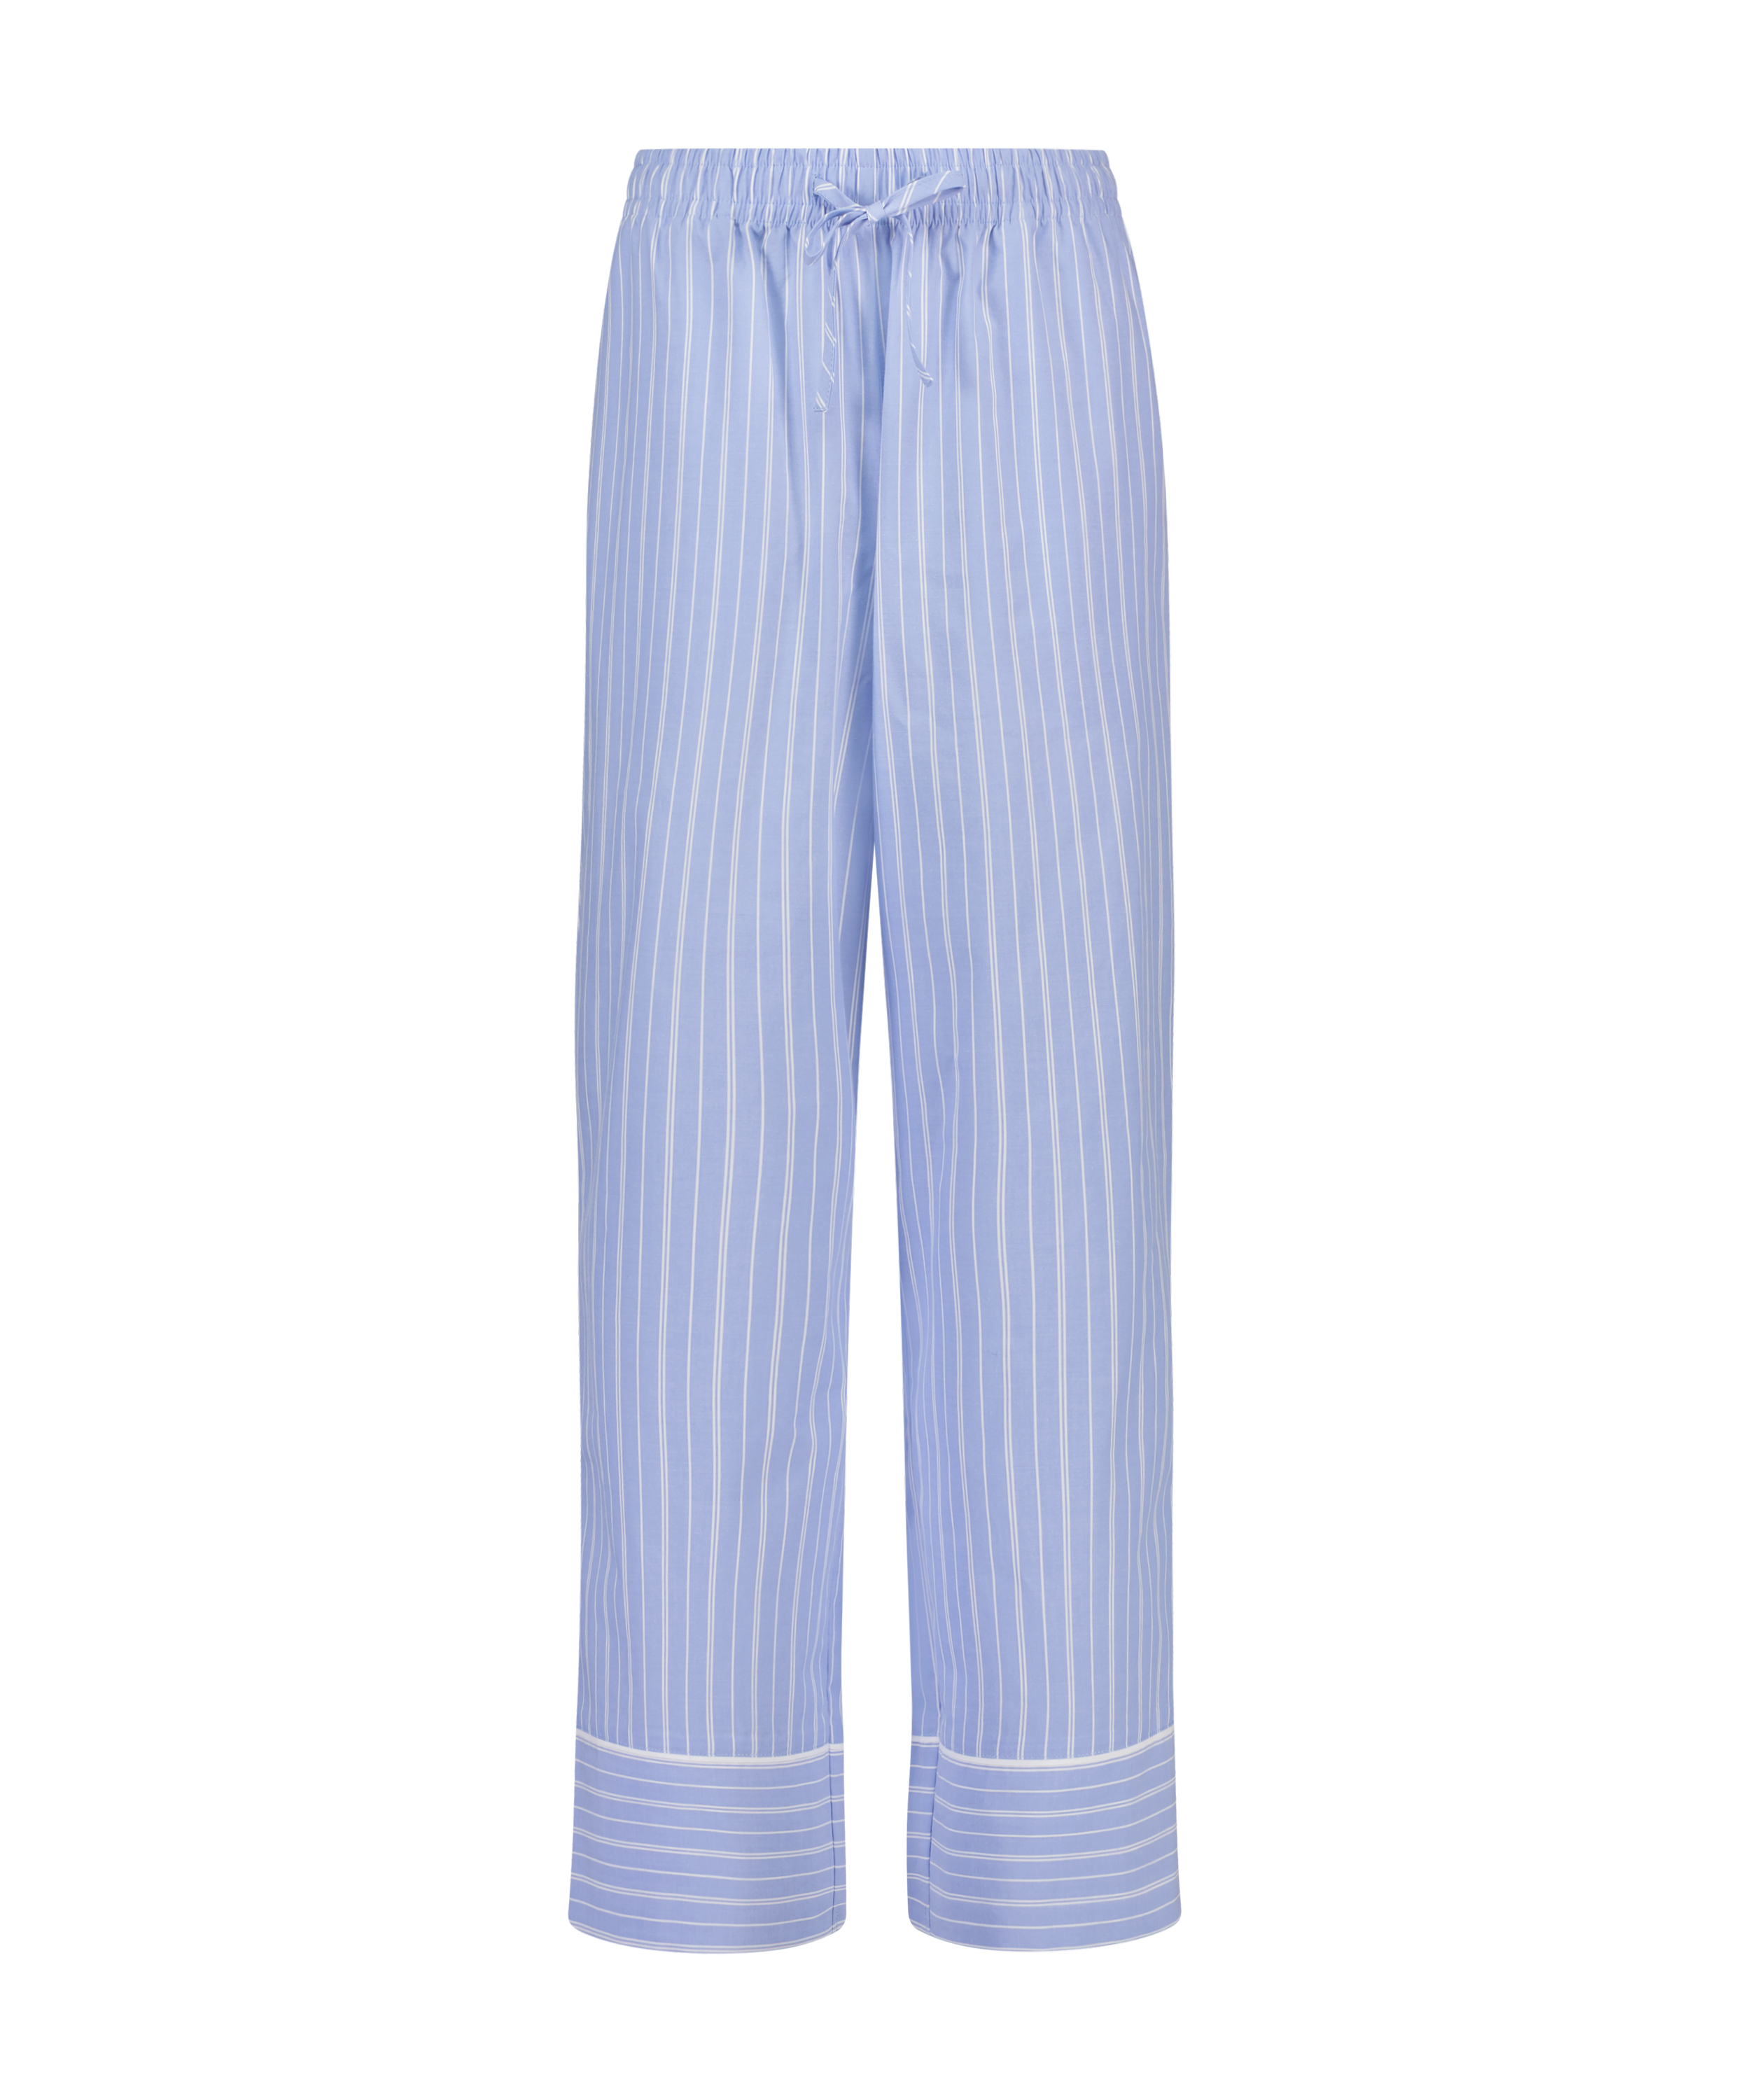 Pyjamasbukser Stripy, blå, main